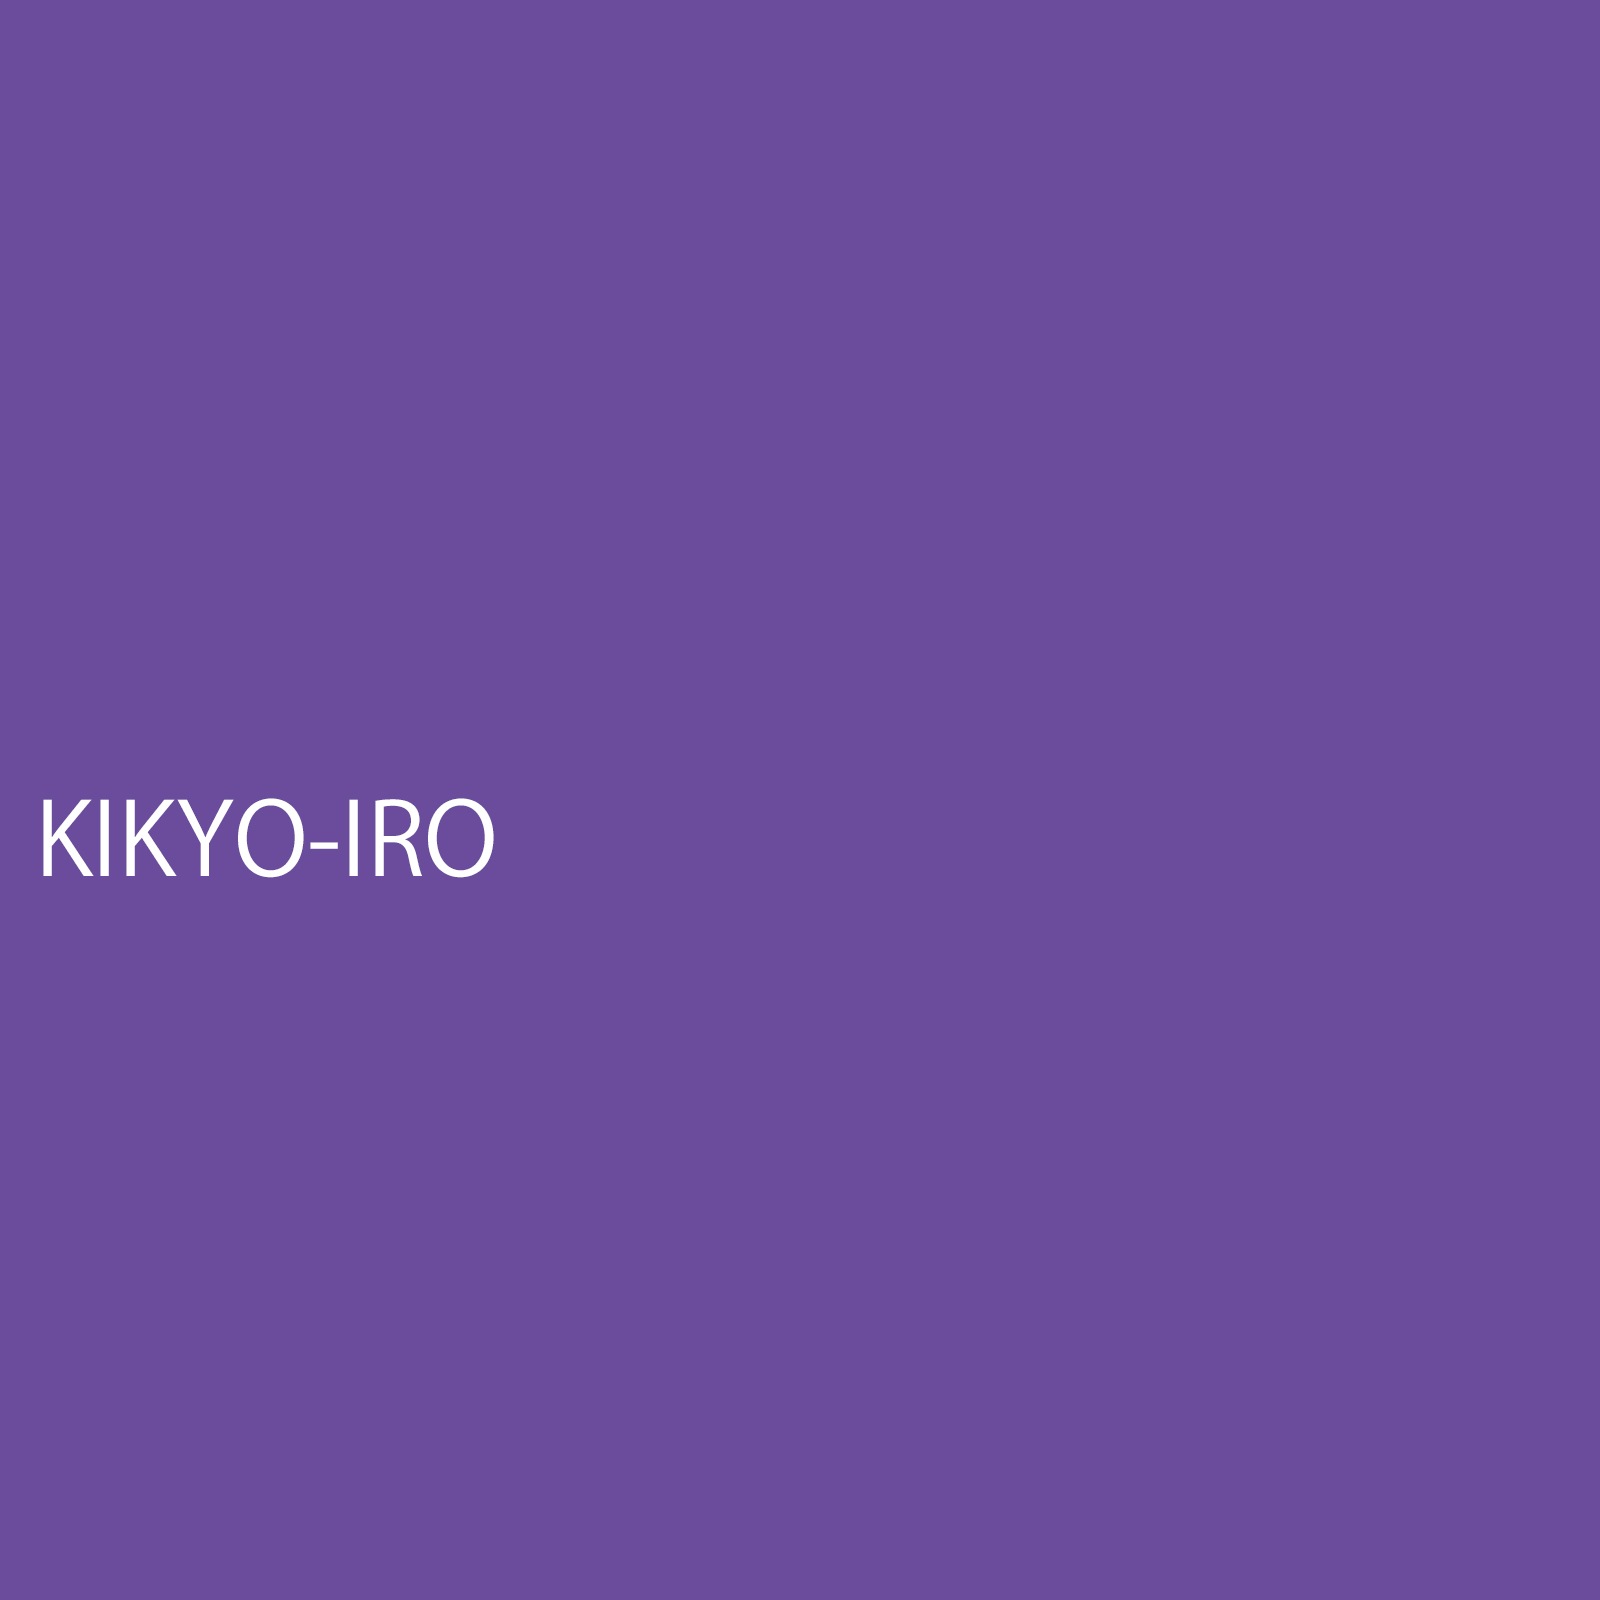 kikyoiro